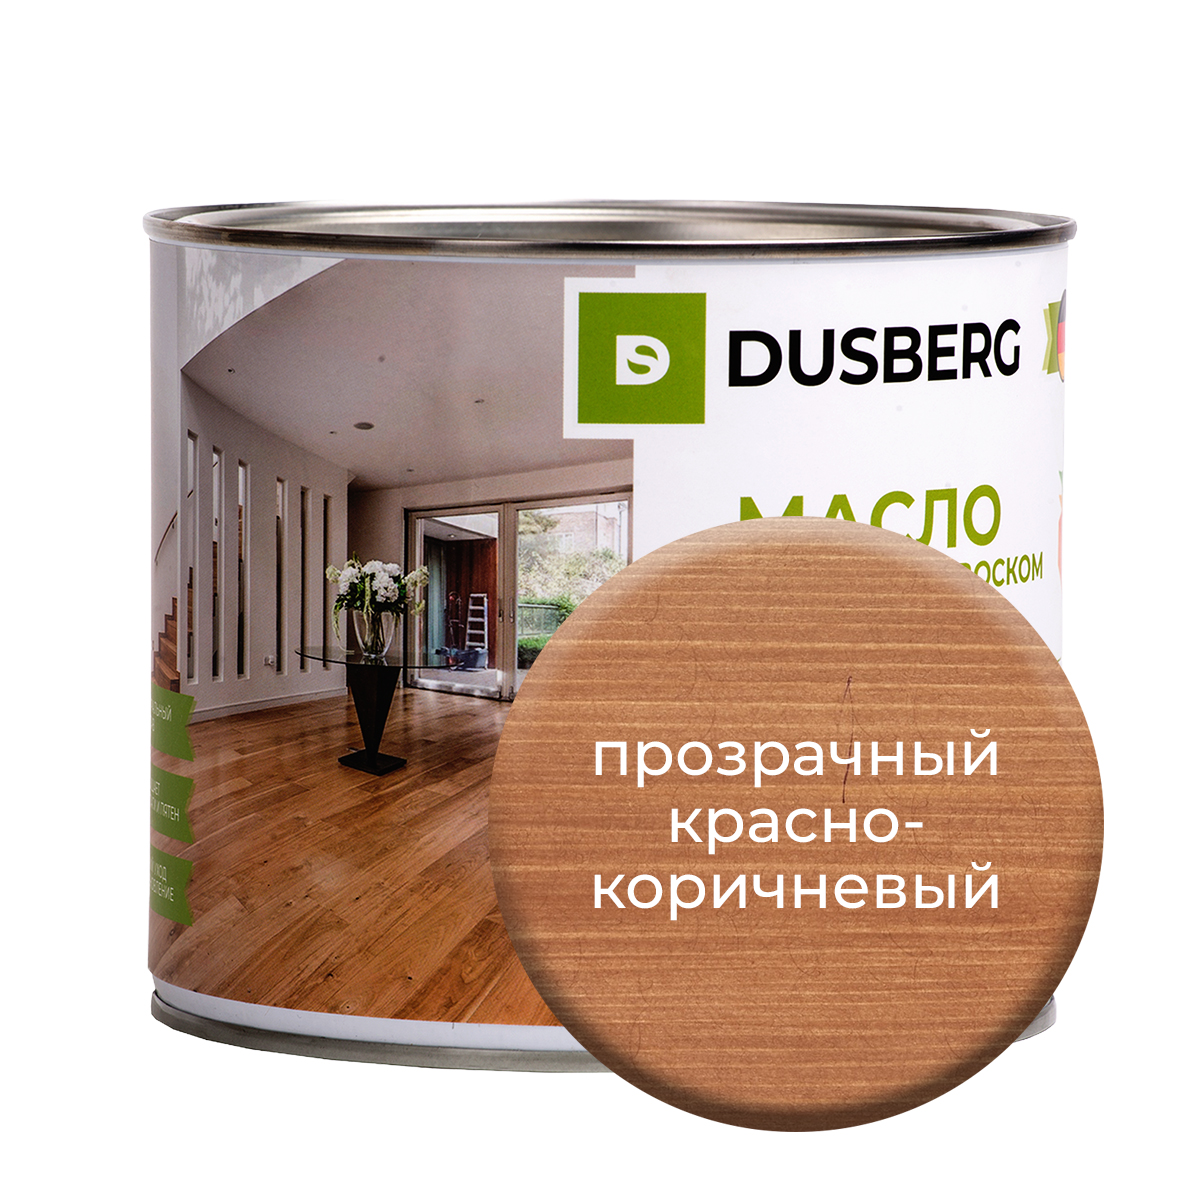 Масло Dusberg для стен, 2л Прозрачный красно-коричневый василий шухаев искусство судьба наследие